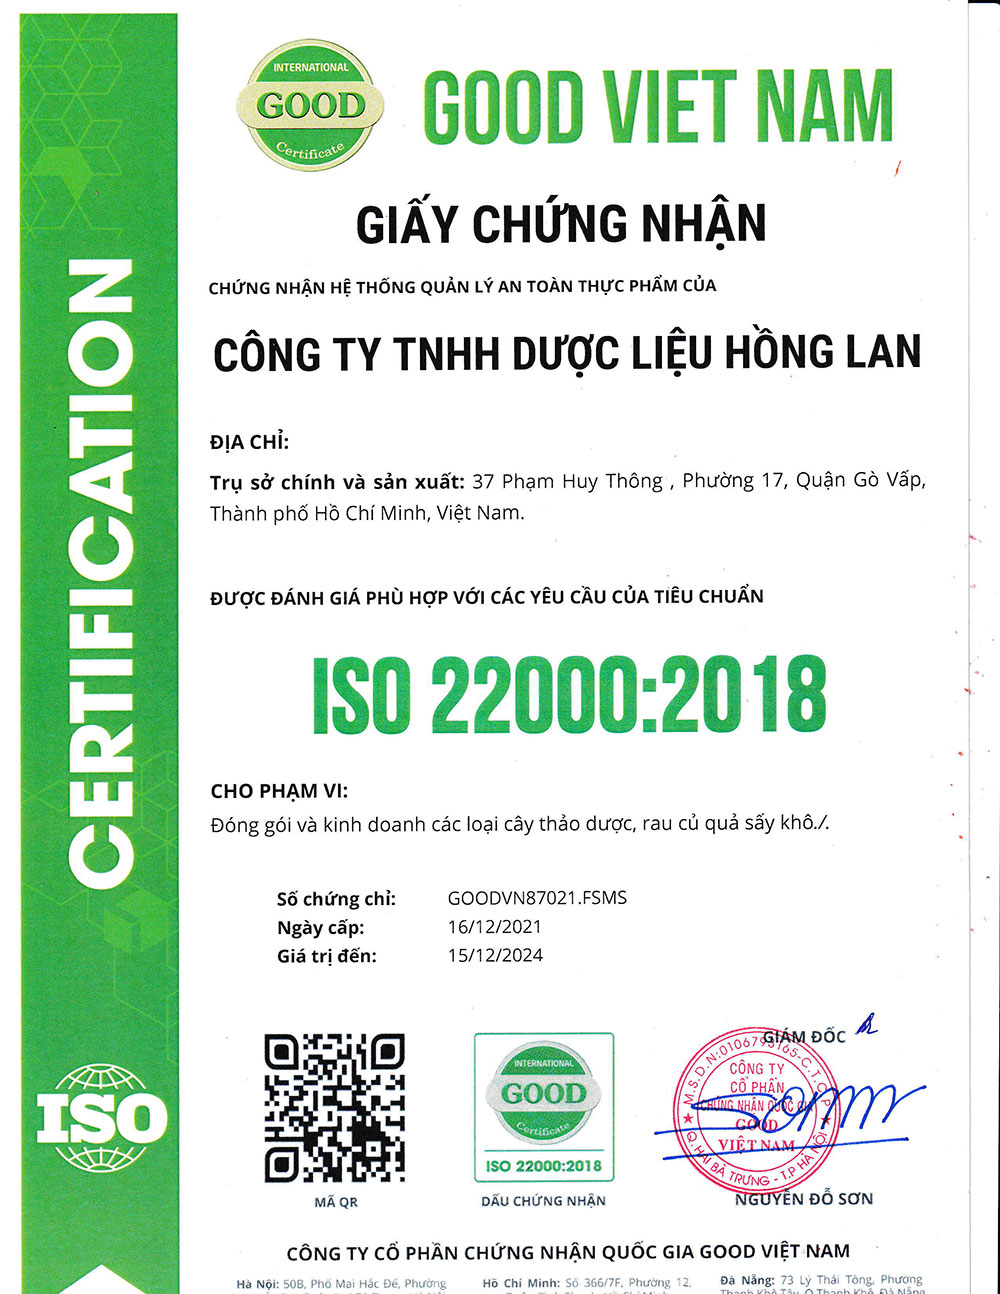 Trà Lạc Tiên dạng túi lọc được sản xuất theo hệ thống quản lý an toàn thực phẩm ISO 22000:2018 được cấp bởi công ty cổ phần chứng nhận Quốc Gia Good Việt Nam (Good Viet Nam Certification Joint Stock Company)